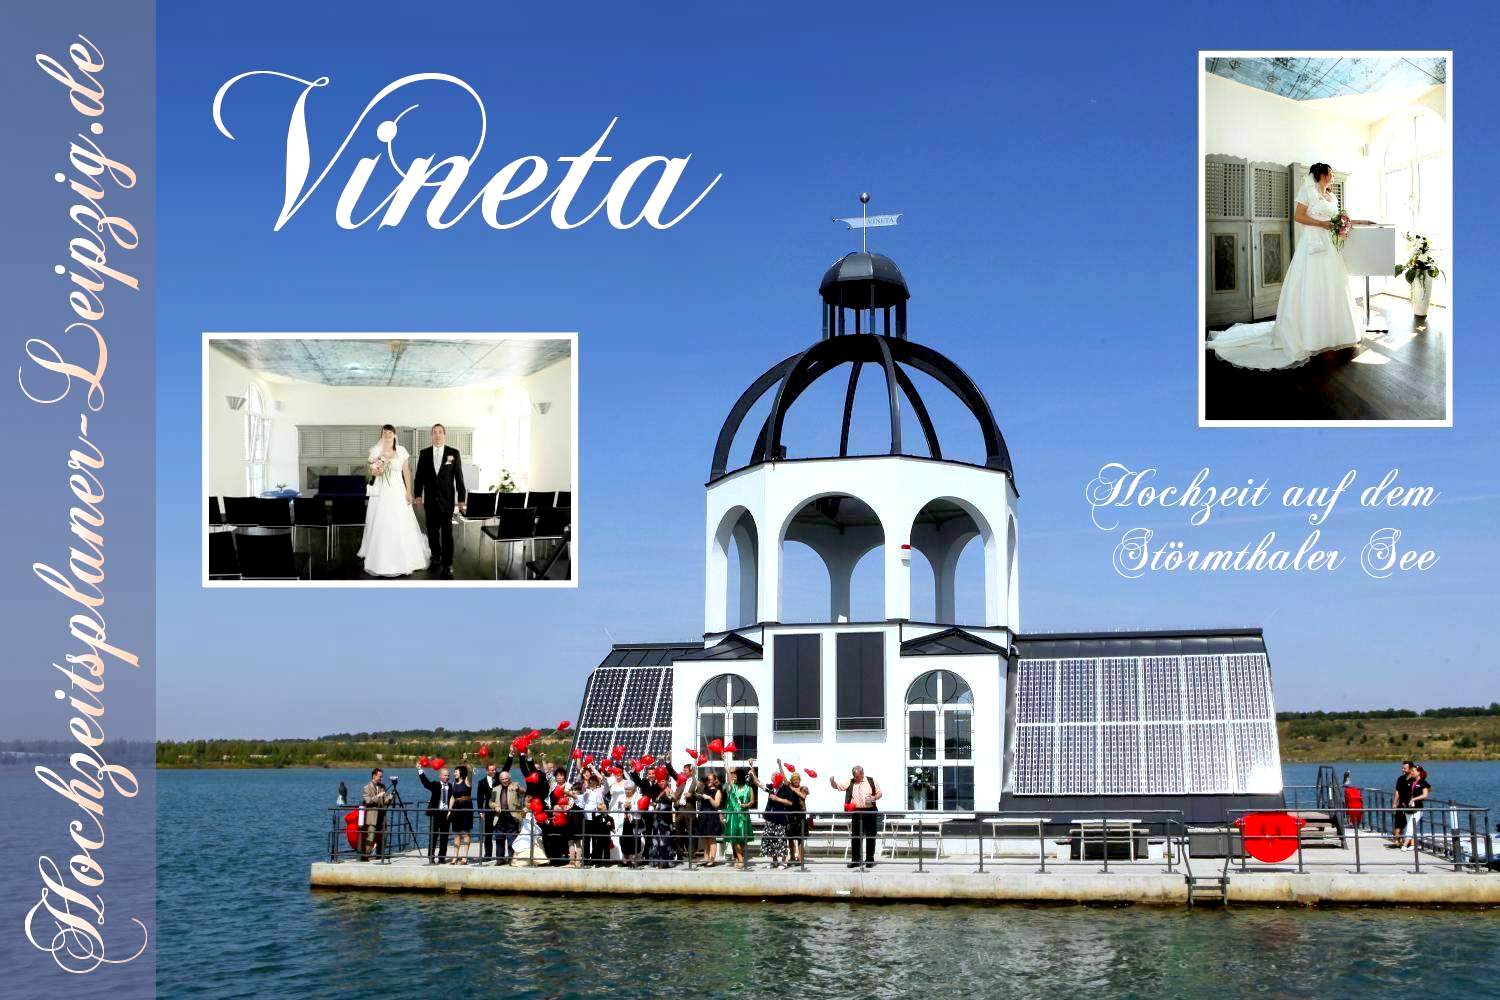 Trauort Vineta - Heiraten auf dem Störmthaler See 